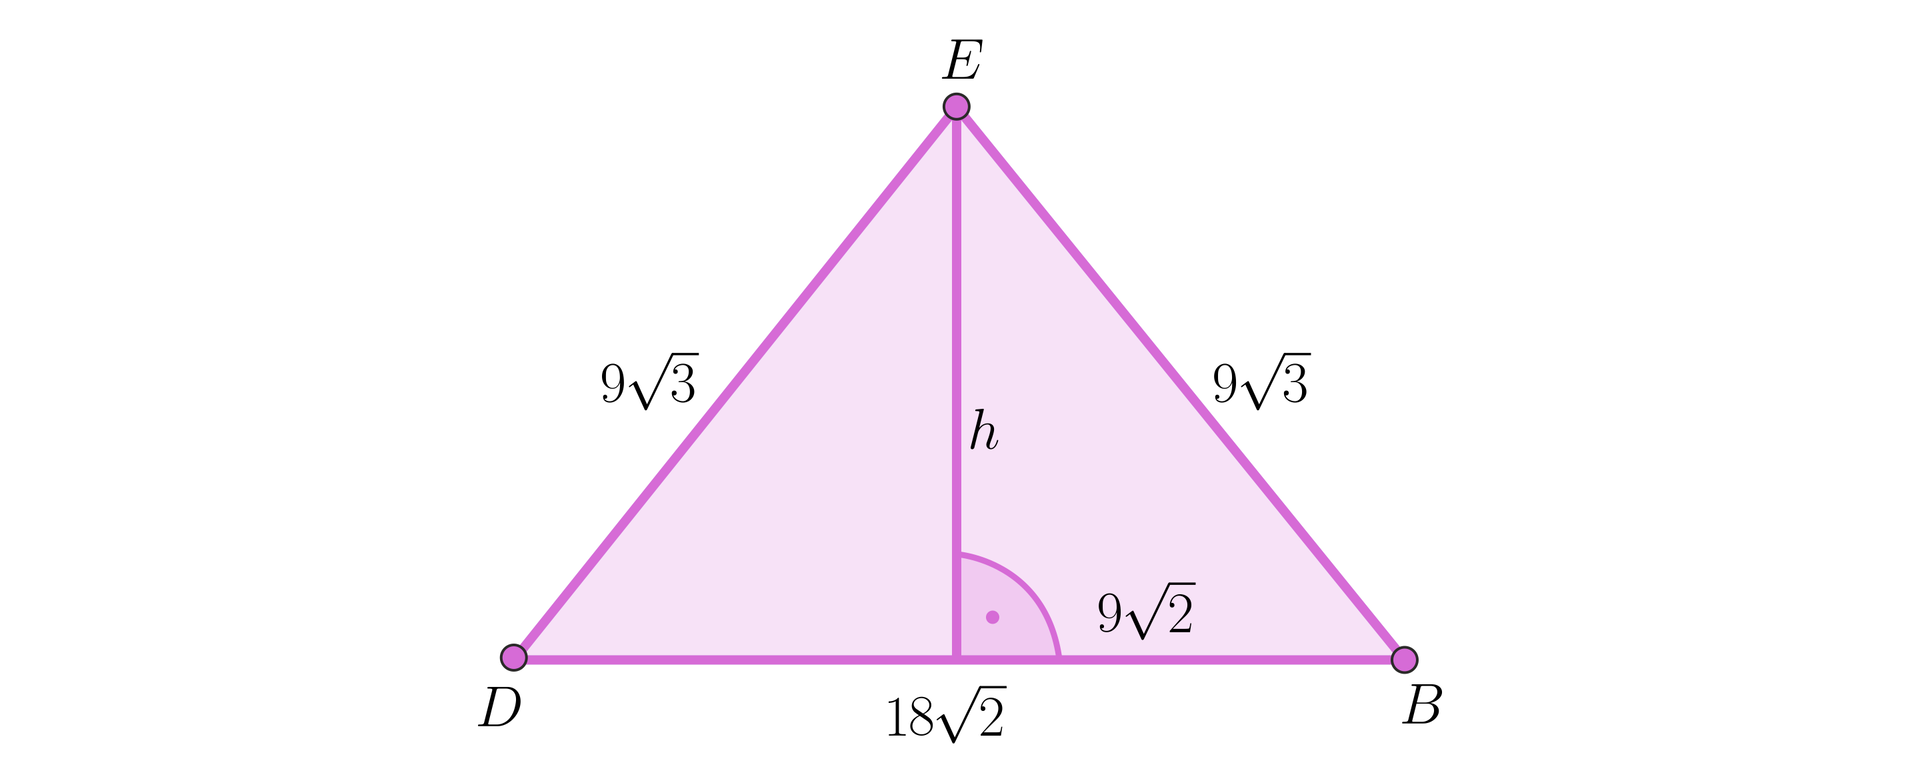 Na rysunku przedstawiono trójkąt równoramienny DBE o podstawie DB o długości 182. Ramiona trójkąta są długości 93 każde. Z wierzchołka E upuszczono pionową wysokość h, która dzieli podstawę trójkąta na dwa równe odcinki o długości 92 każdy.